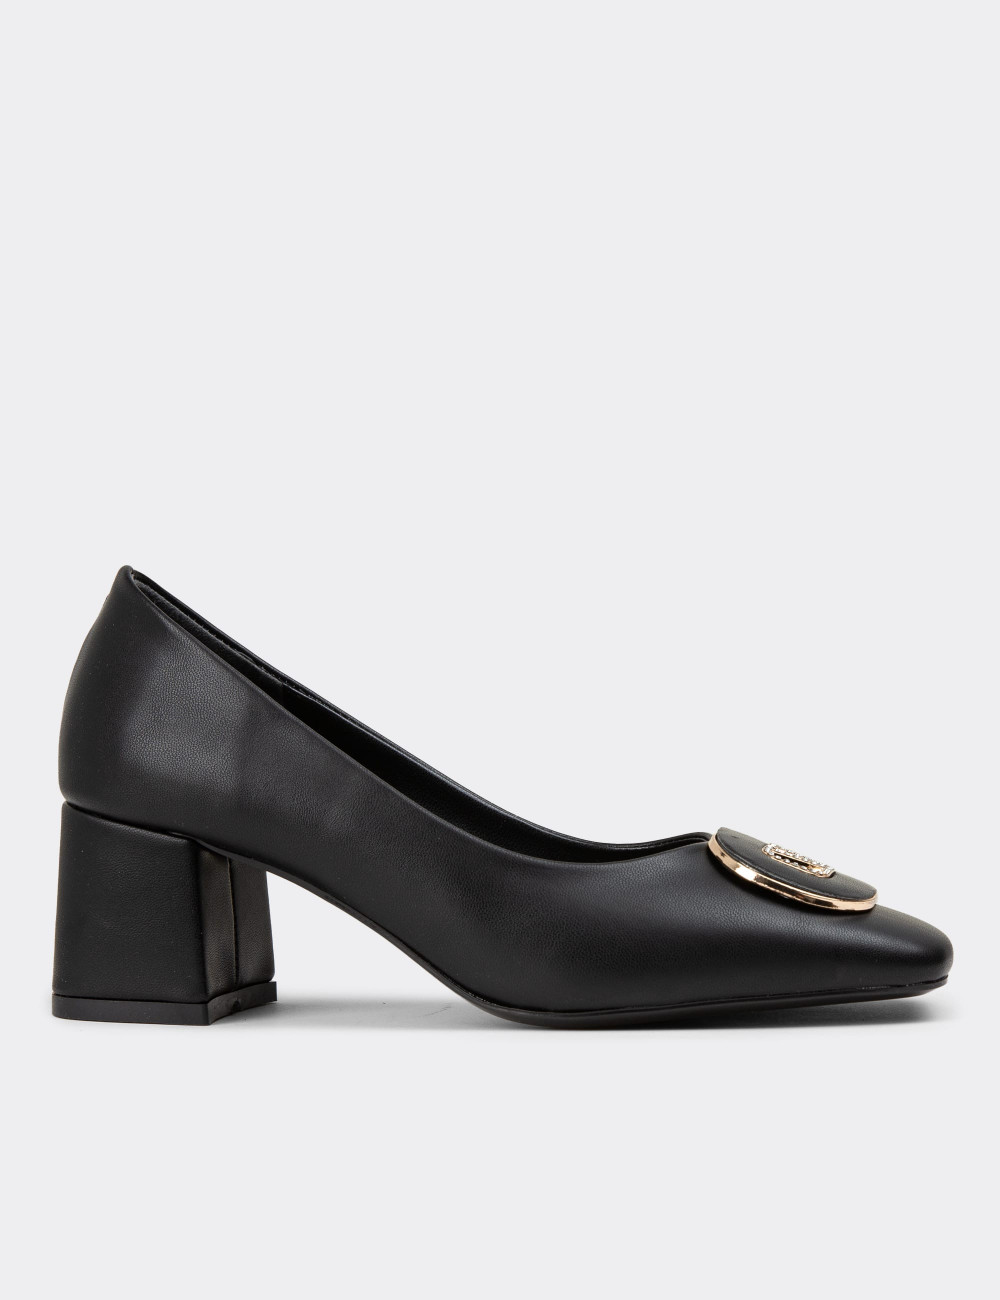 Siyah Kadın Topuklu Günlük Ayakkabı - 24109ZSYHC01